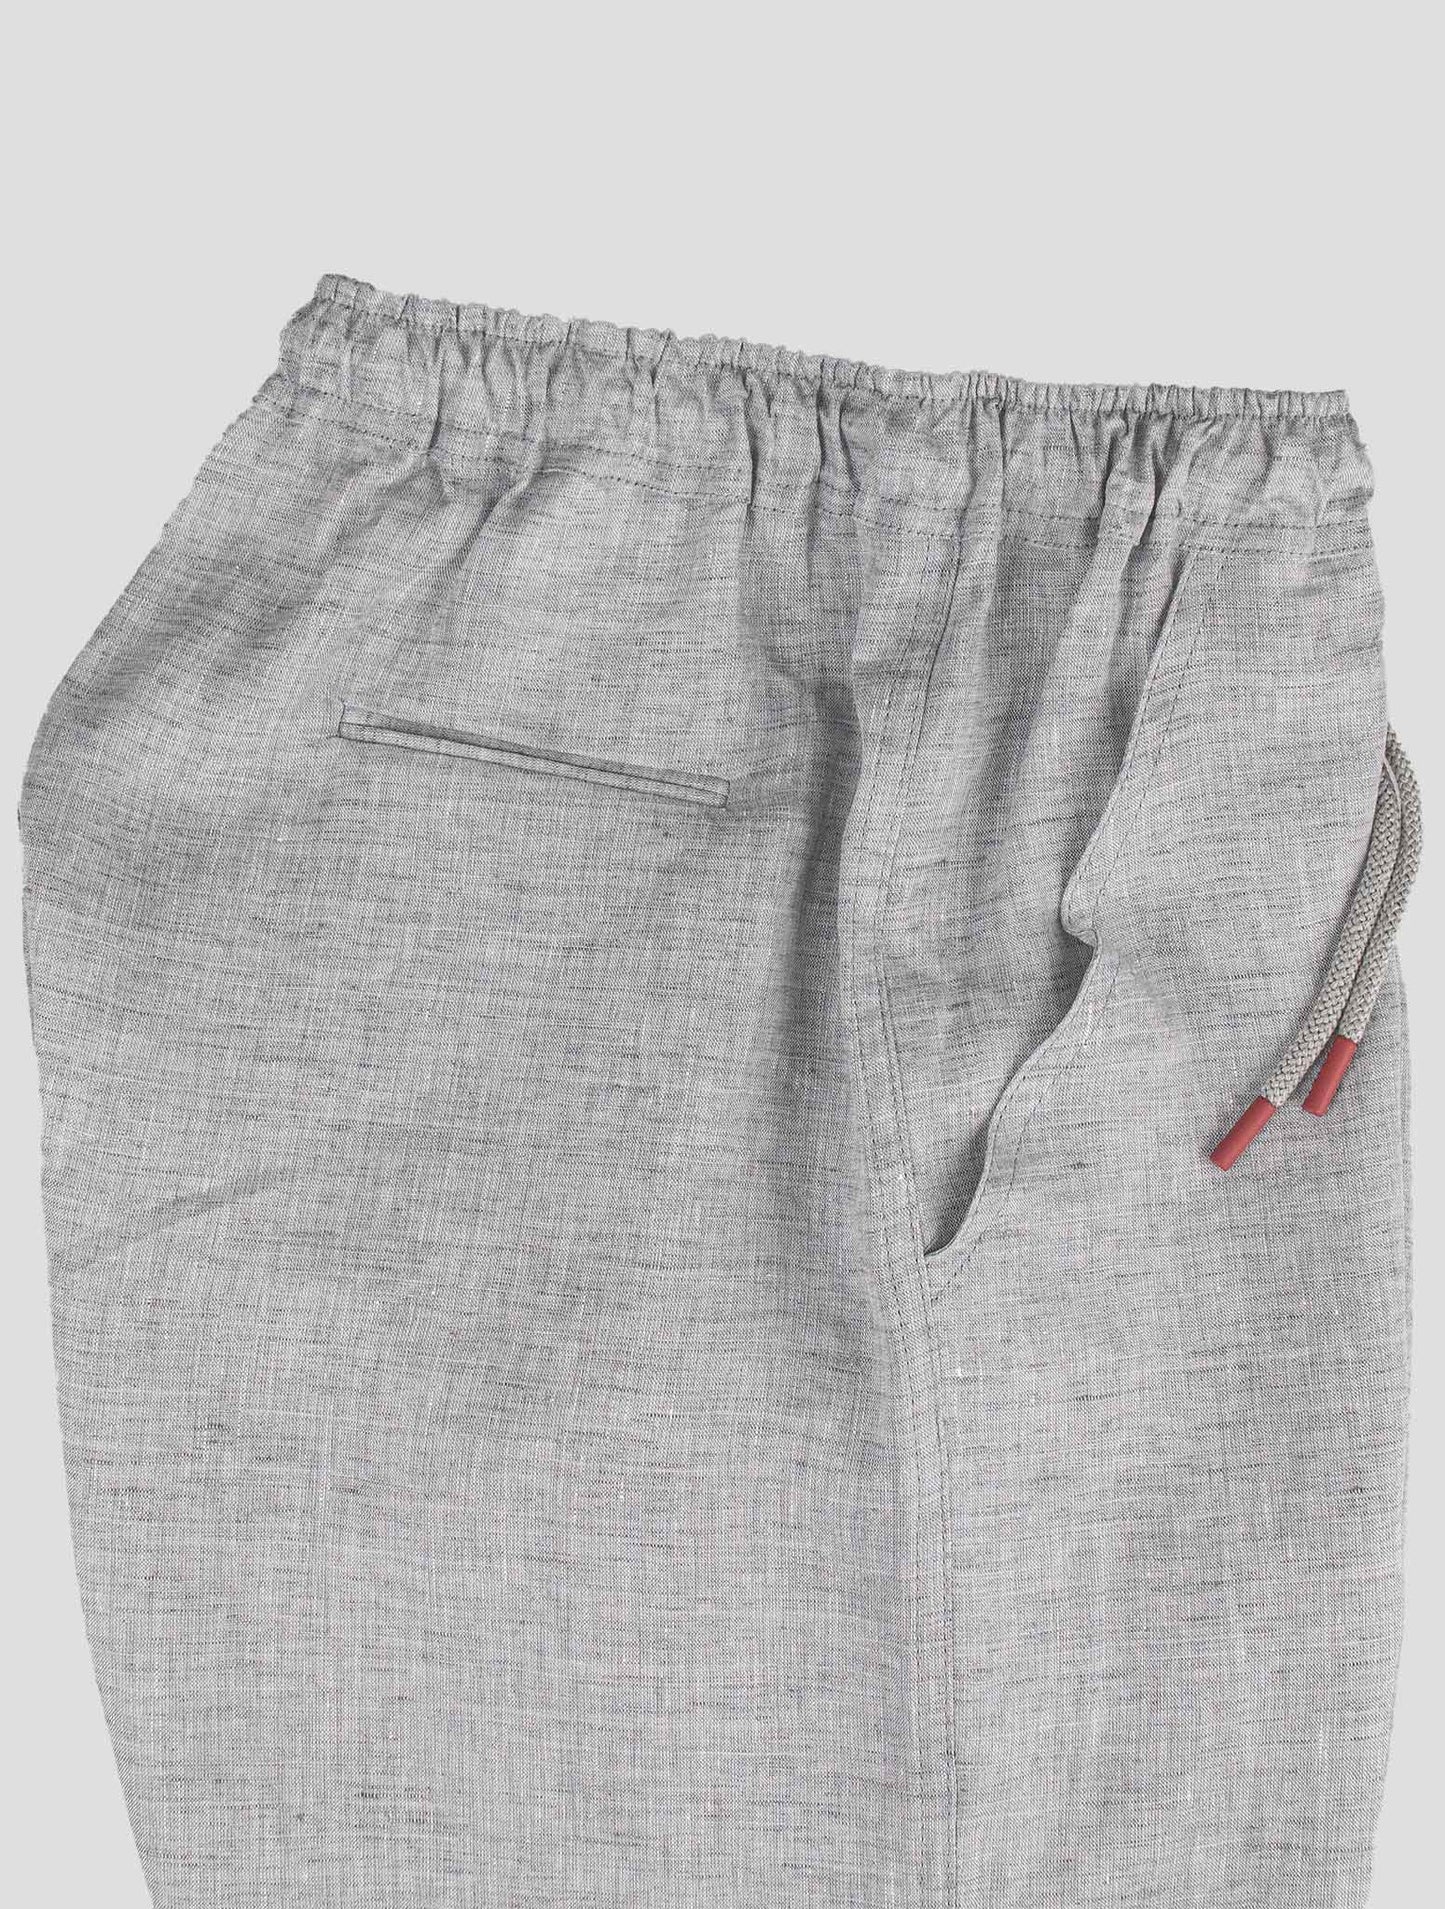 Pantalones cortos de lino grises de Kiton